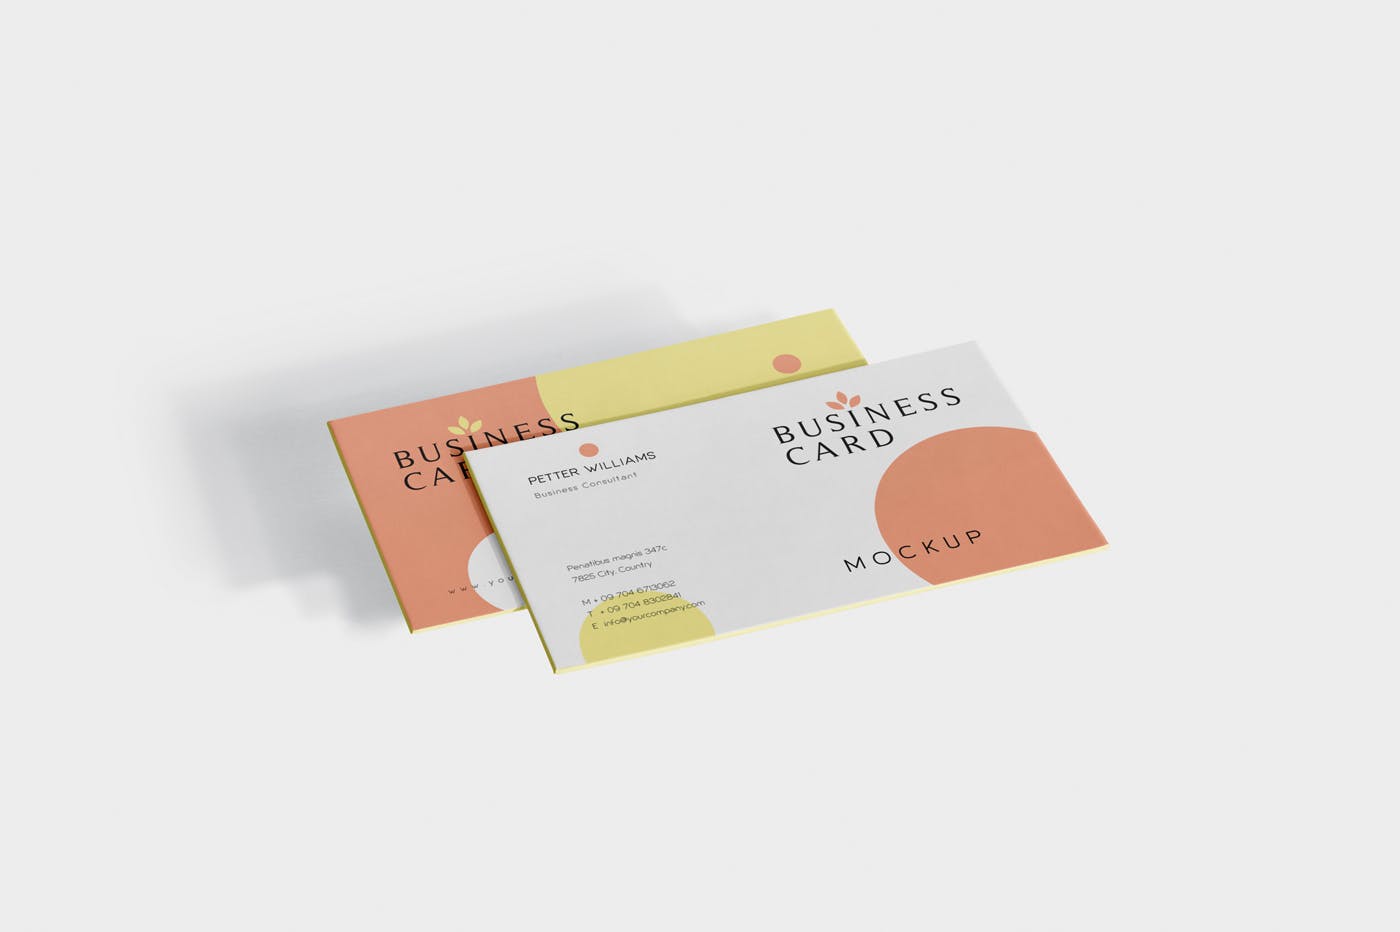 创意企业名片设计阴影效果图蚂蚁素材精选 Business Card Mock-Ups插图(3)